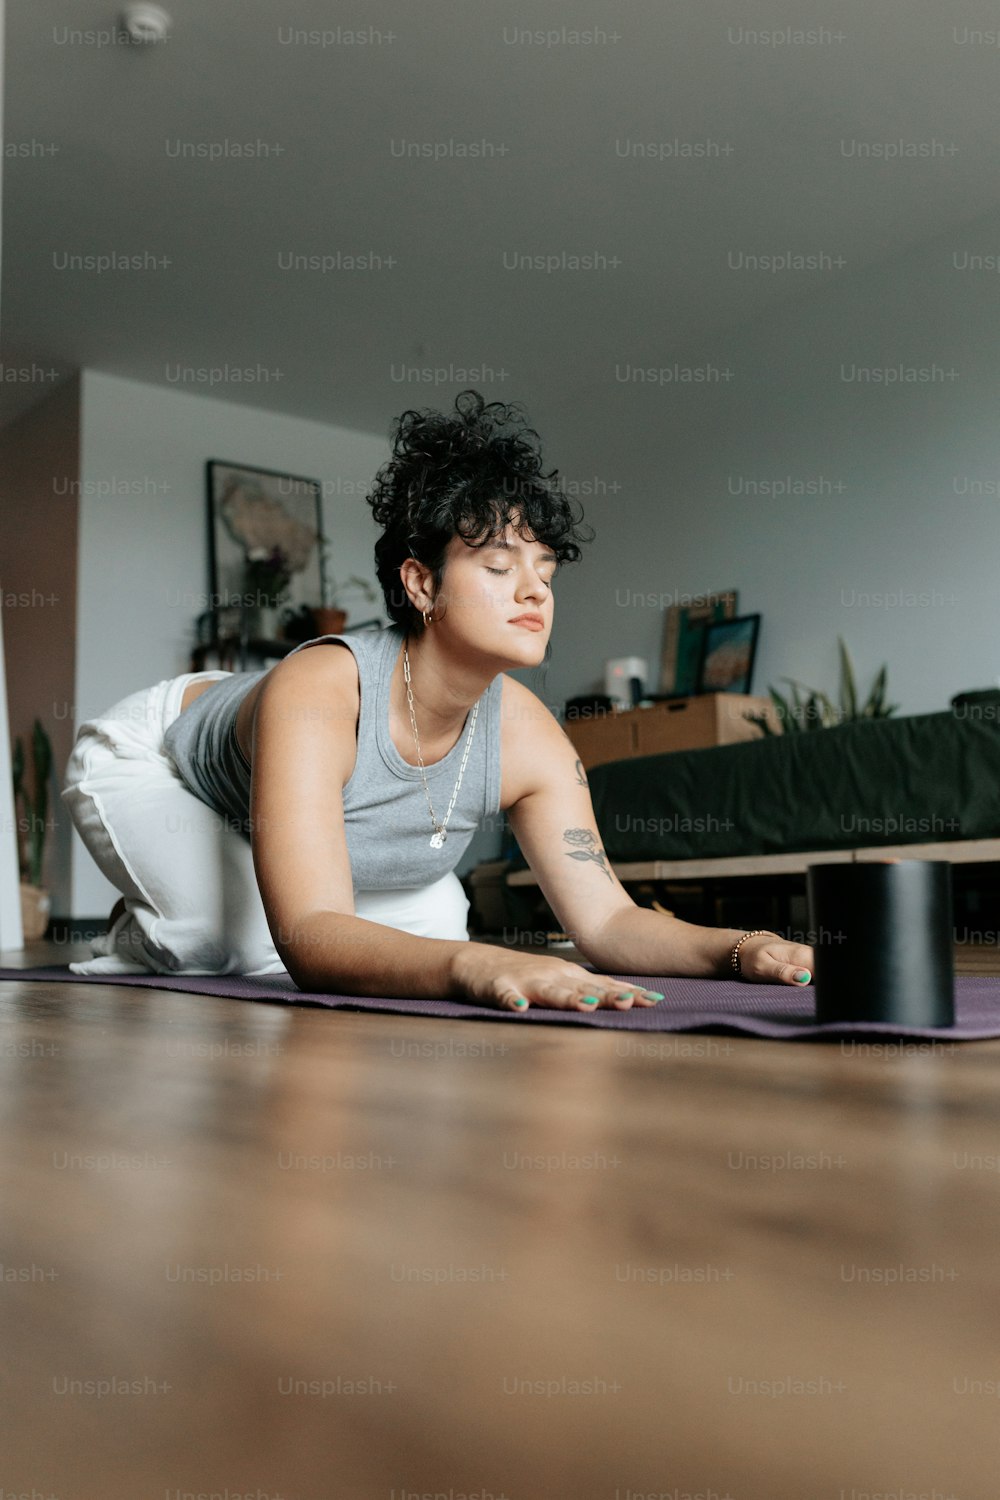 Une femme allongée sur un tapis de yoga dans un salon